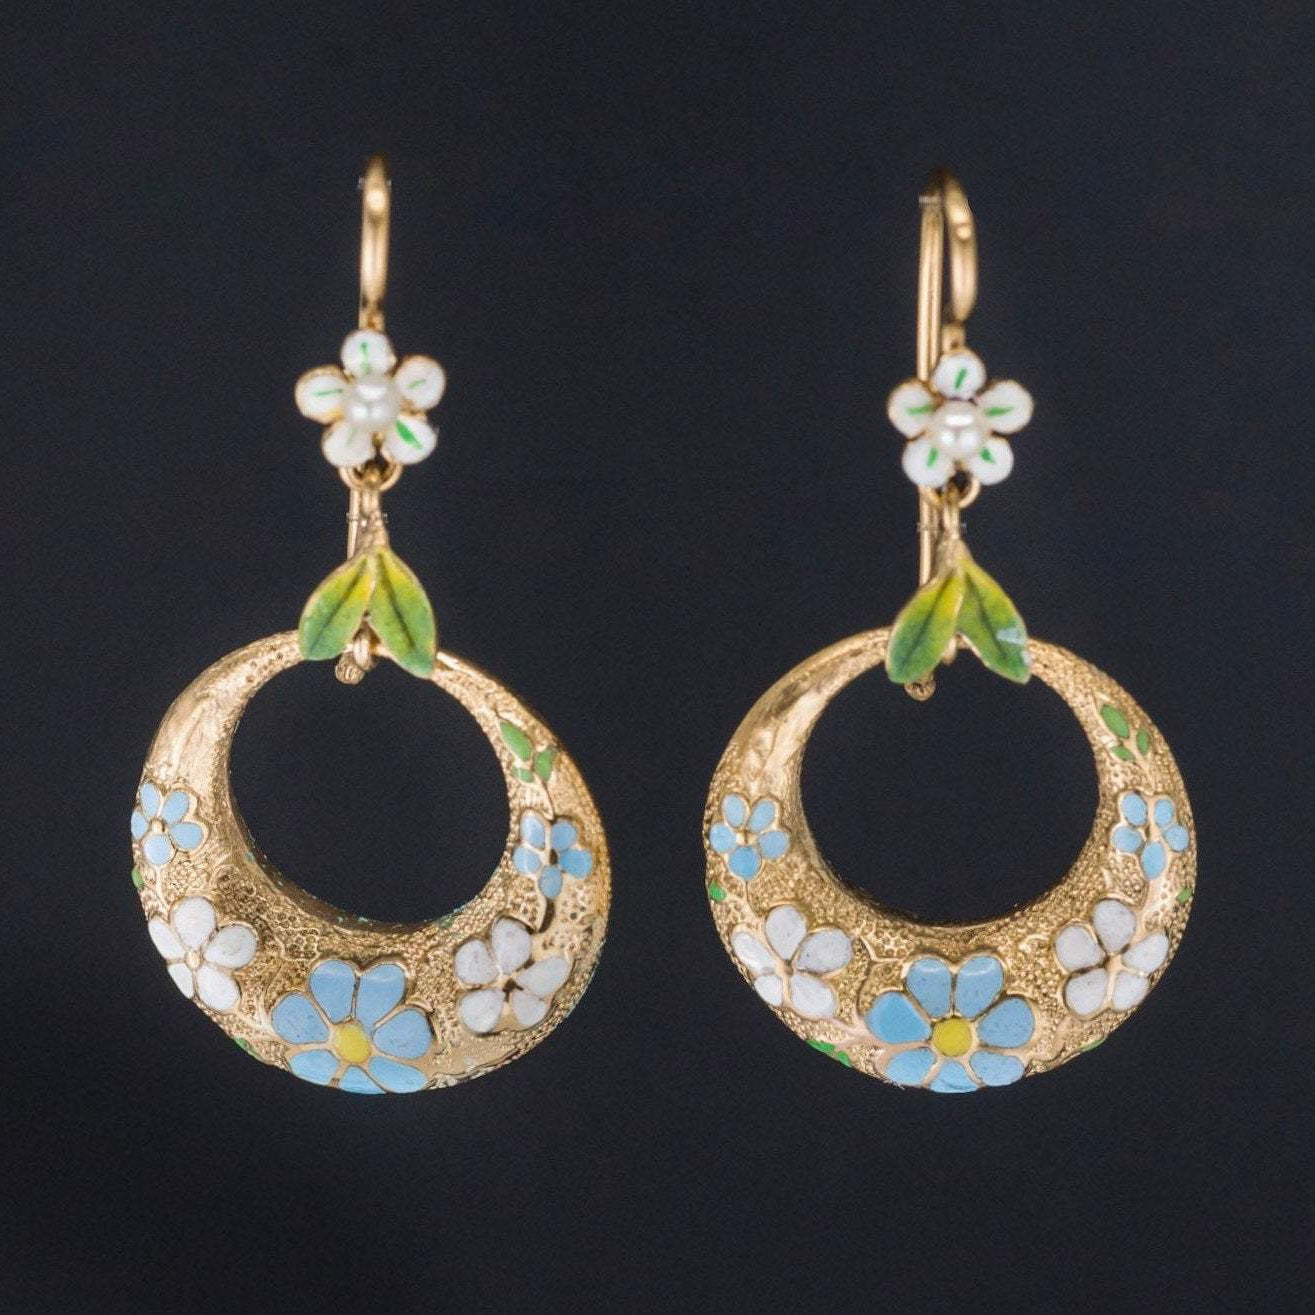 Forget-me-not Earrings | 14k Gold Earrings | Enamel & Pearl Flower Earrings | Pin Conversion Earrings